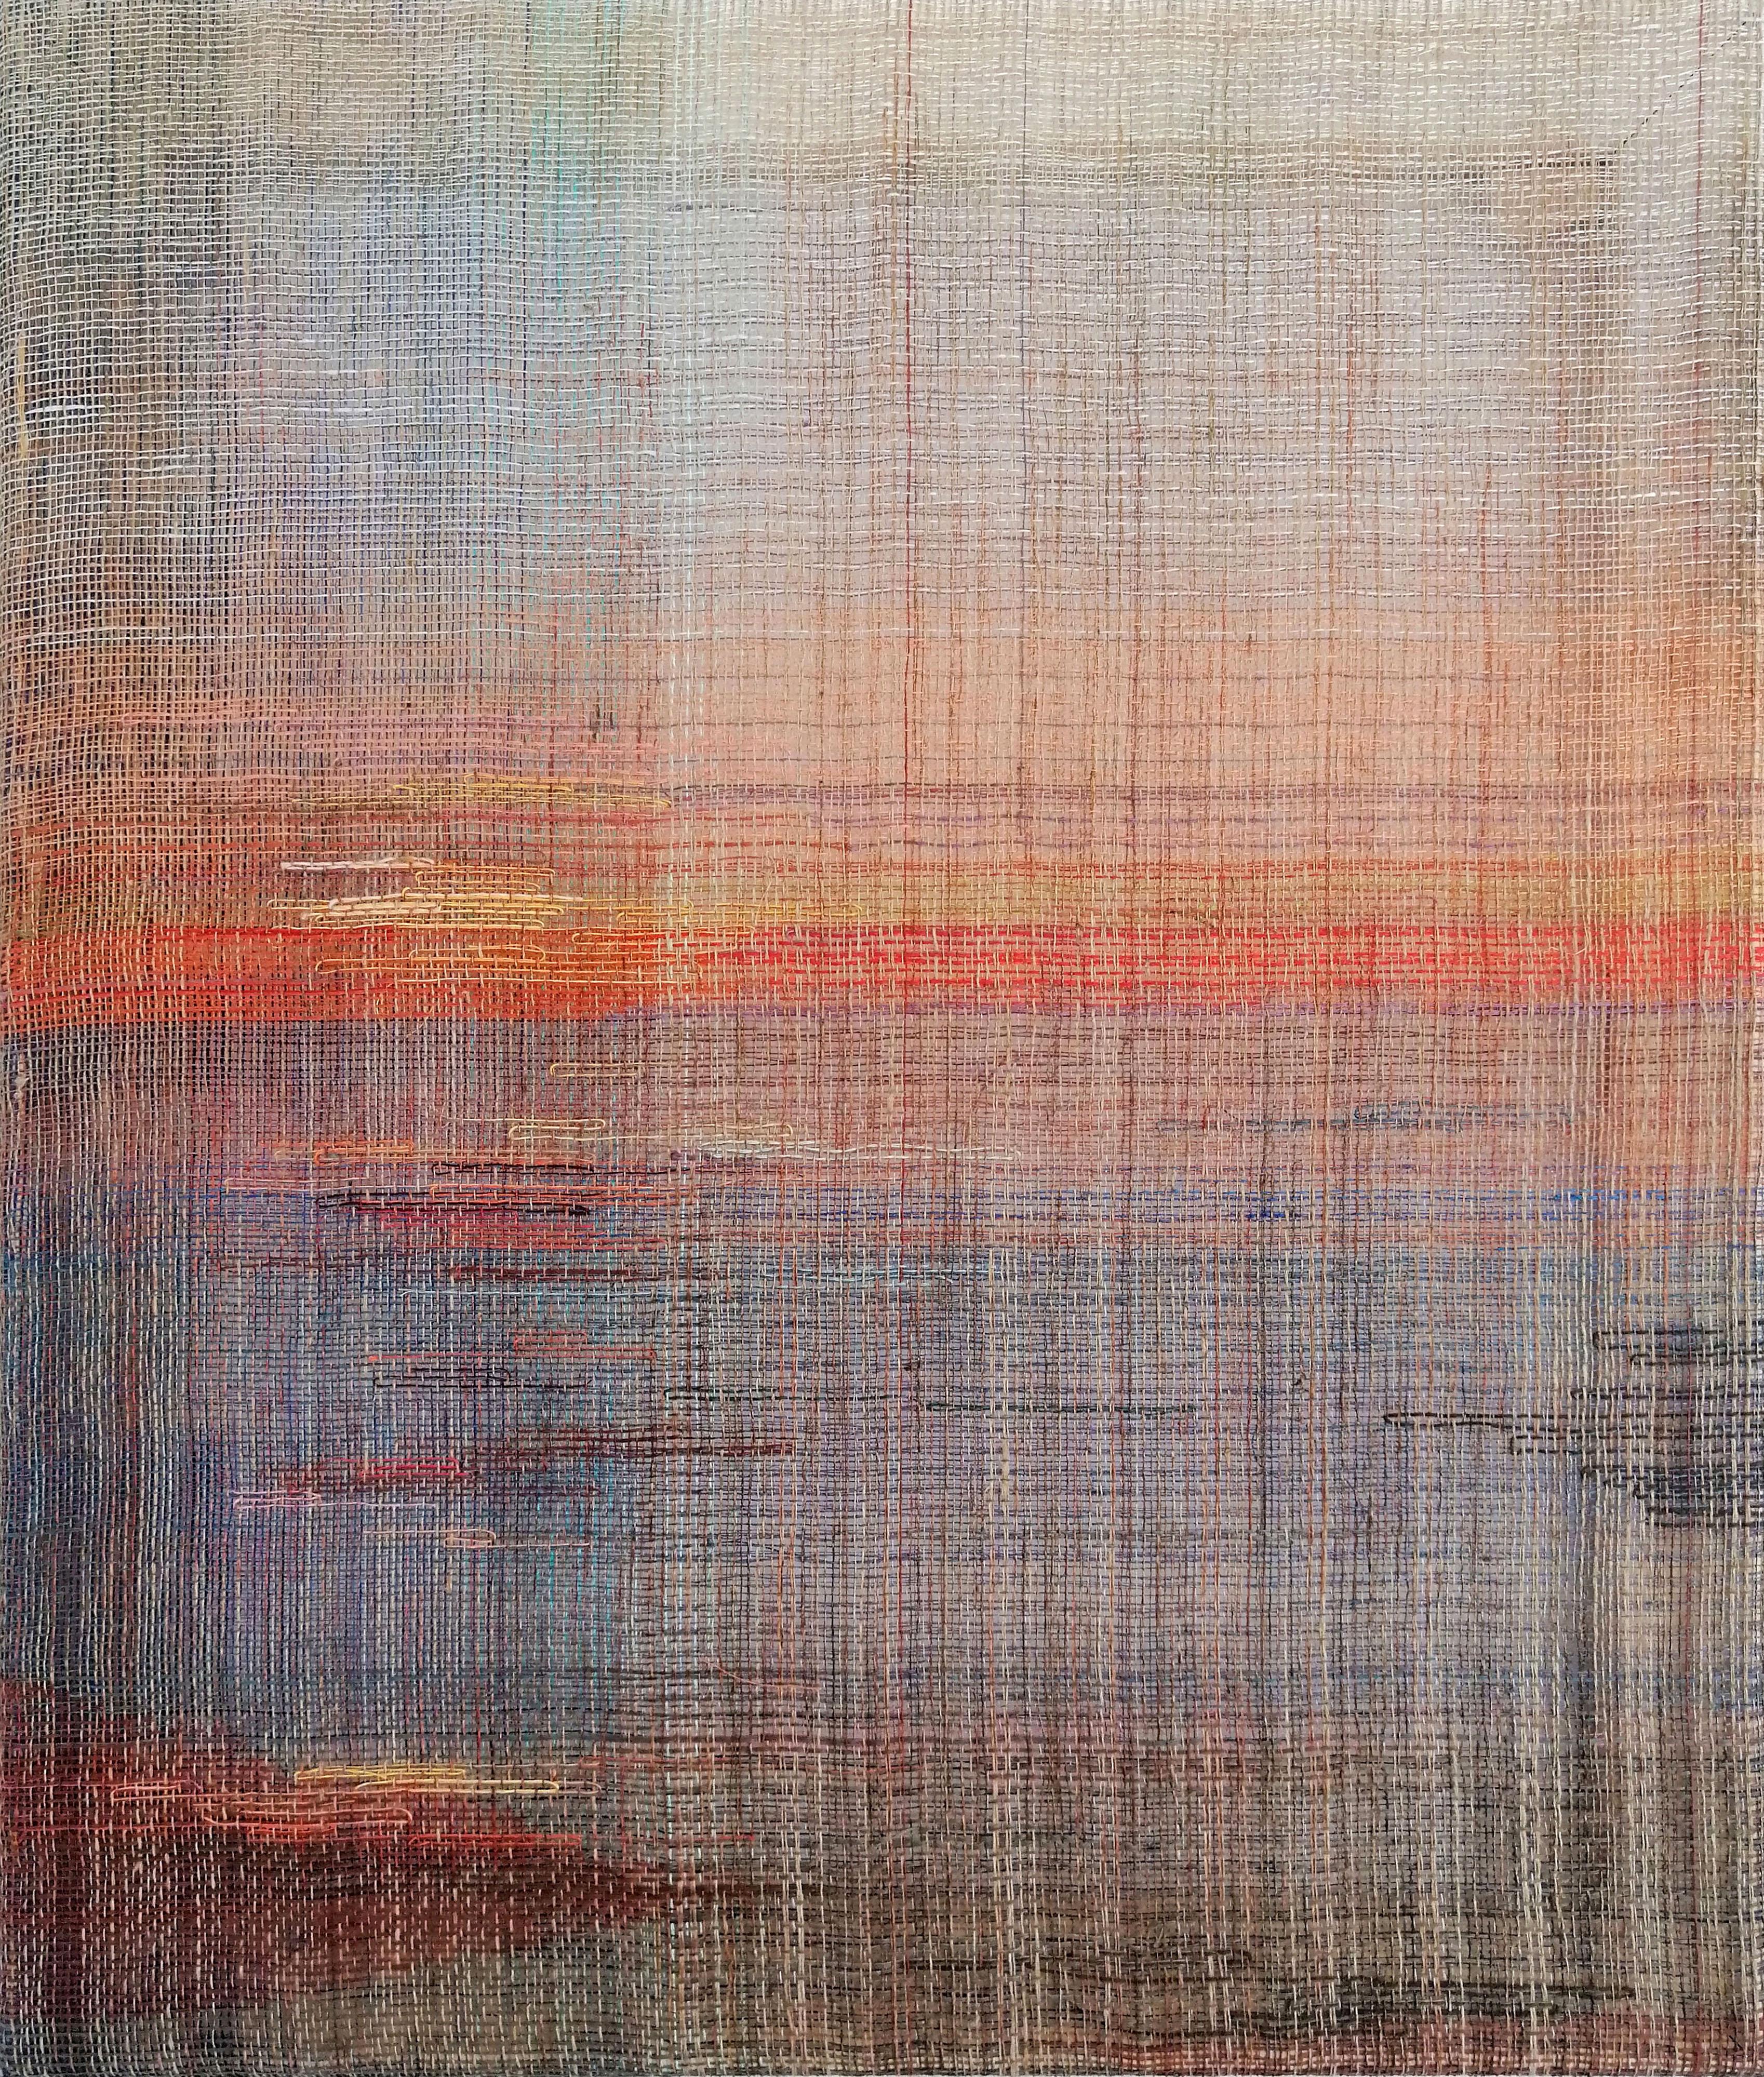 Sonnenuntergang - Handgewebt  Abstrakte Landschaft, Zeitgenössische gewebte und gemalte Kunstwerke